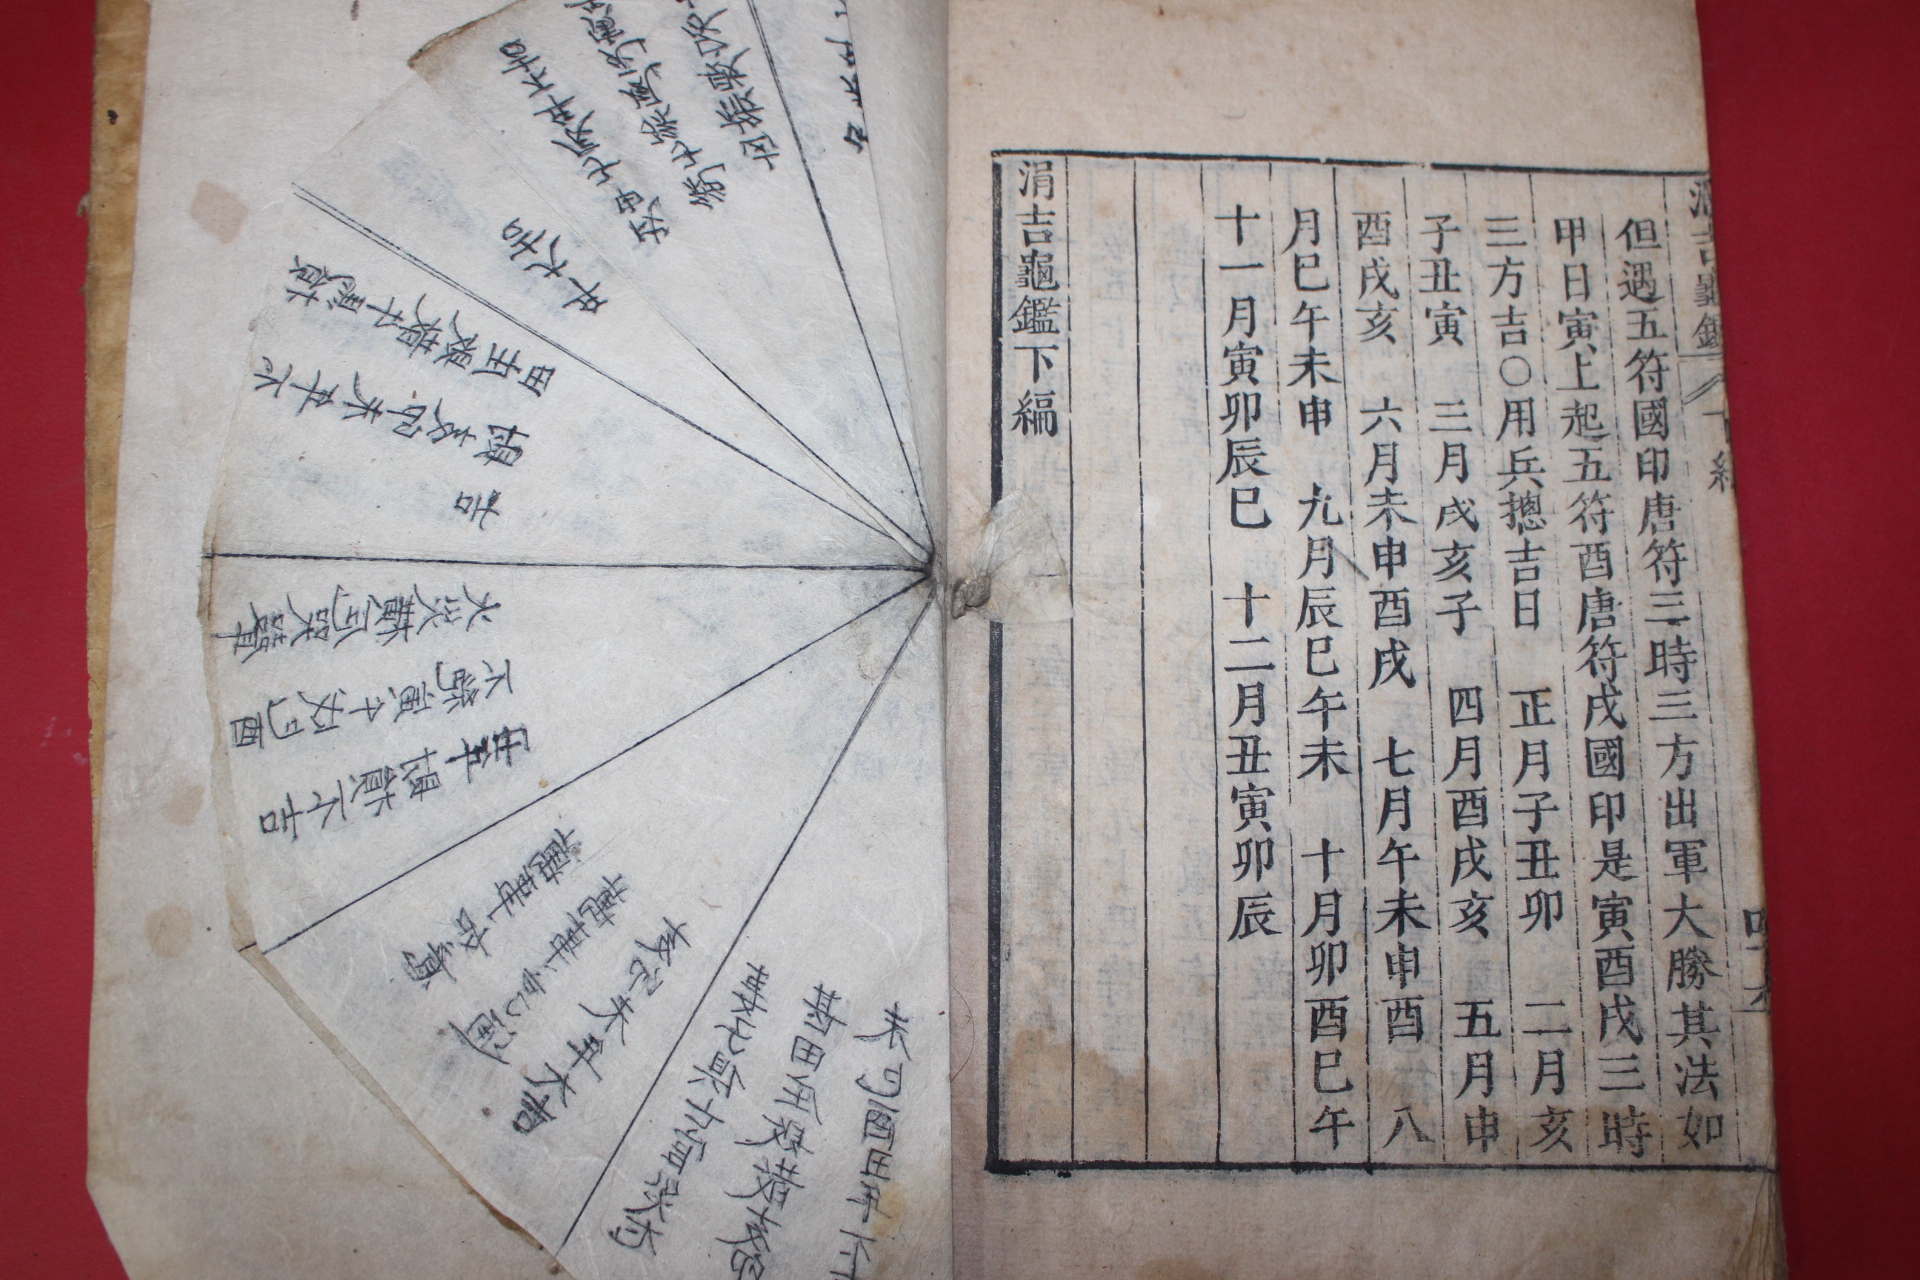 1867년 목판본 천문역학서 남원상(南元常)편 연길귀감(涓吉龜鑑) 상하 2책완질